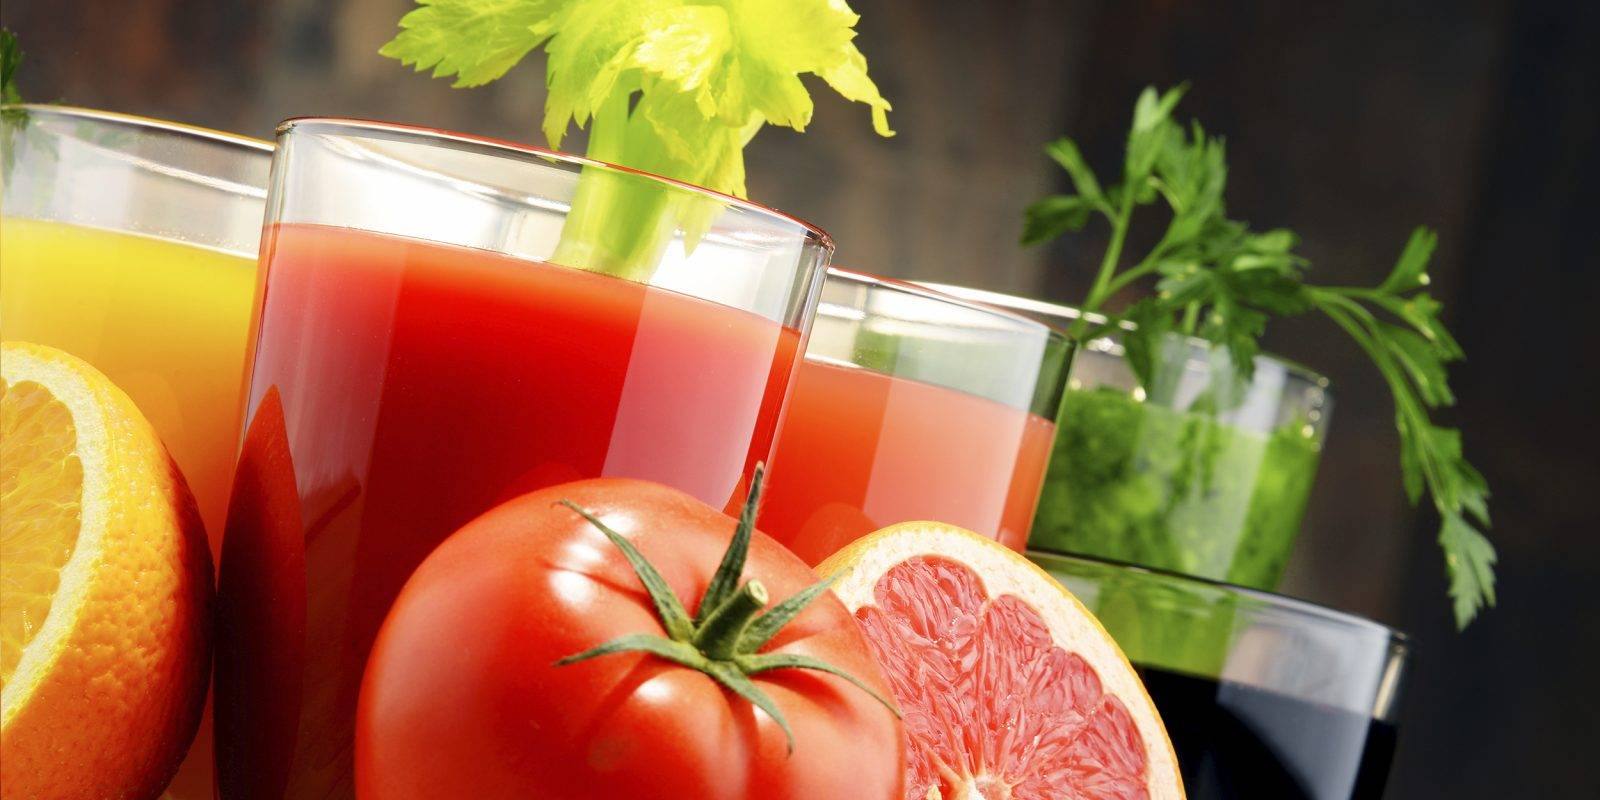 Овощные и фруктовые соки для стройного тела: польза и вред, рецепты, советы